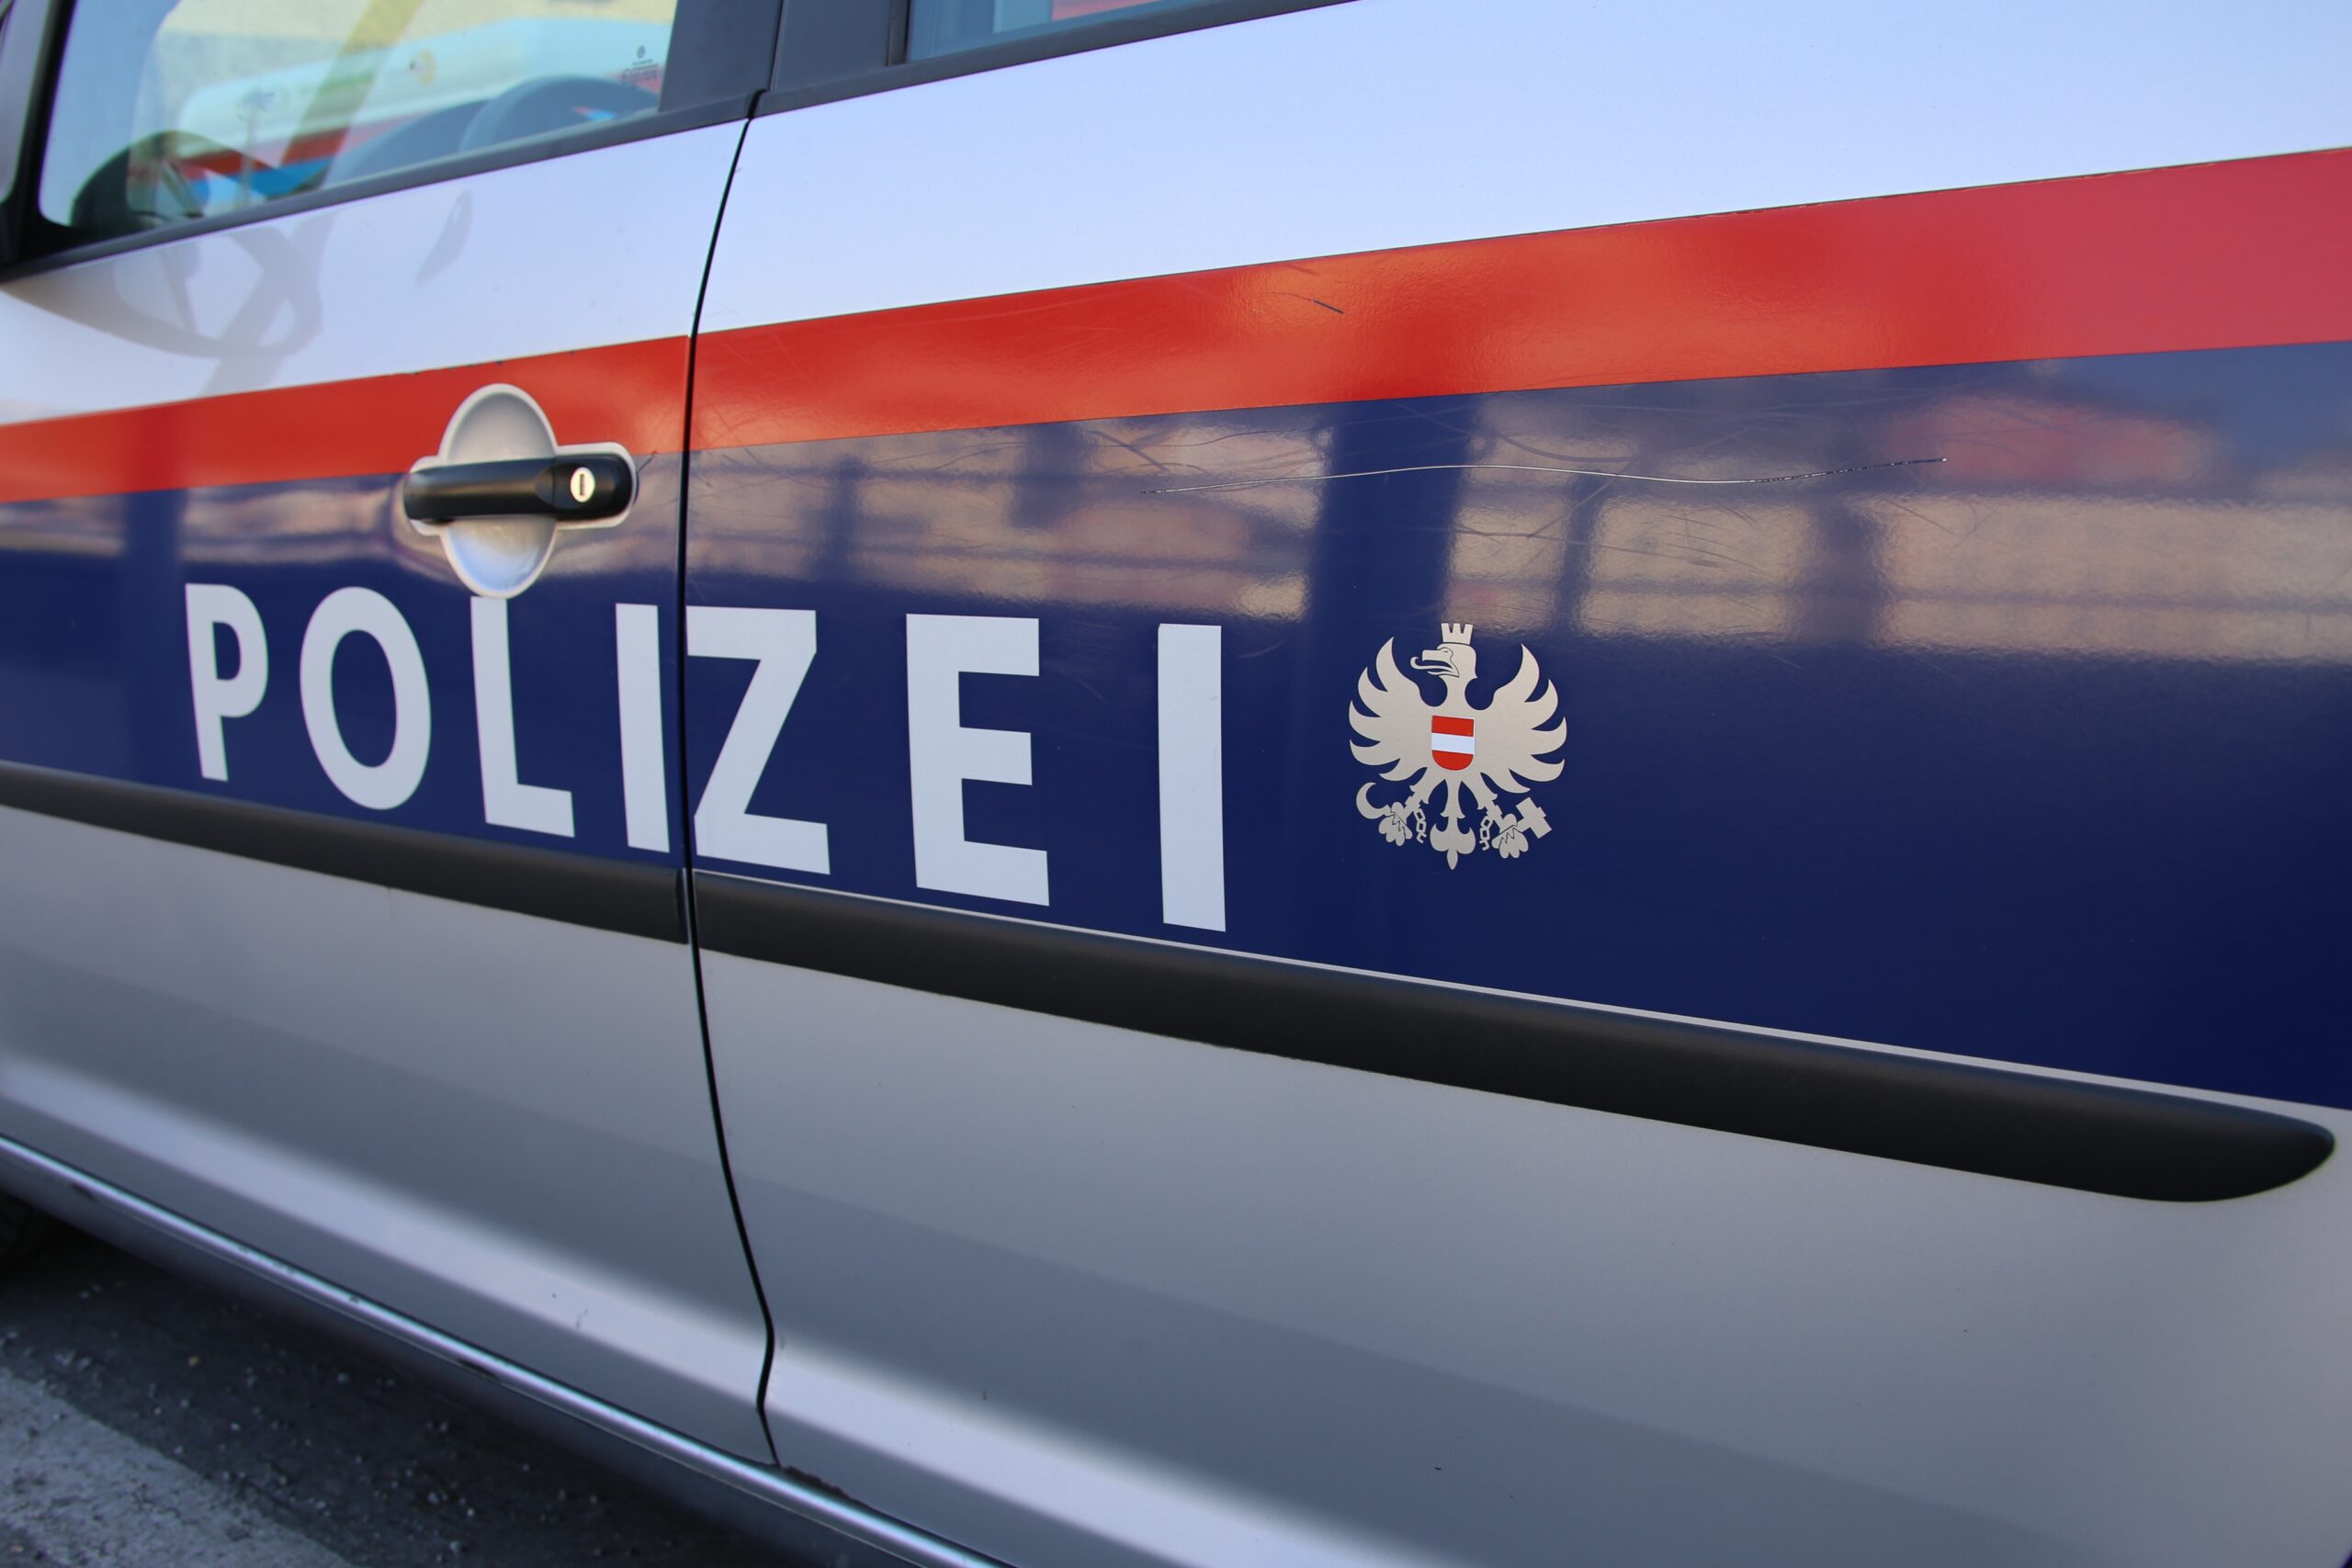 Djevojčica iz Crne Gore uhapšena u Austriji: Planirala teroristički napad?